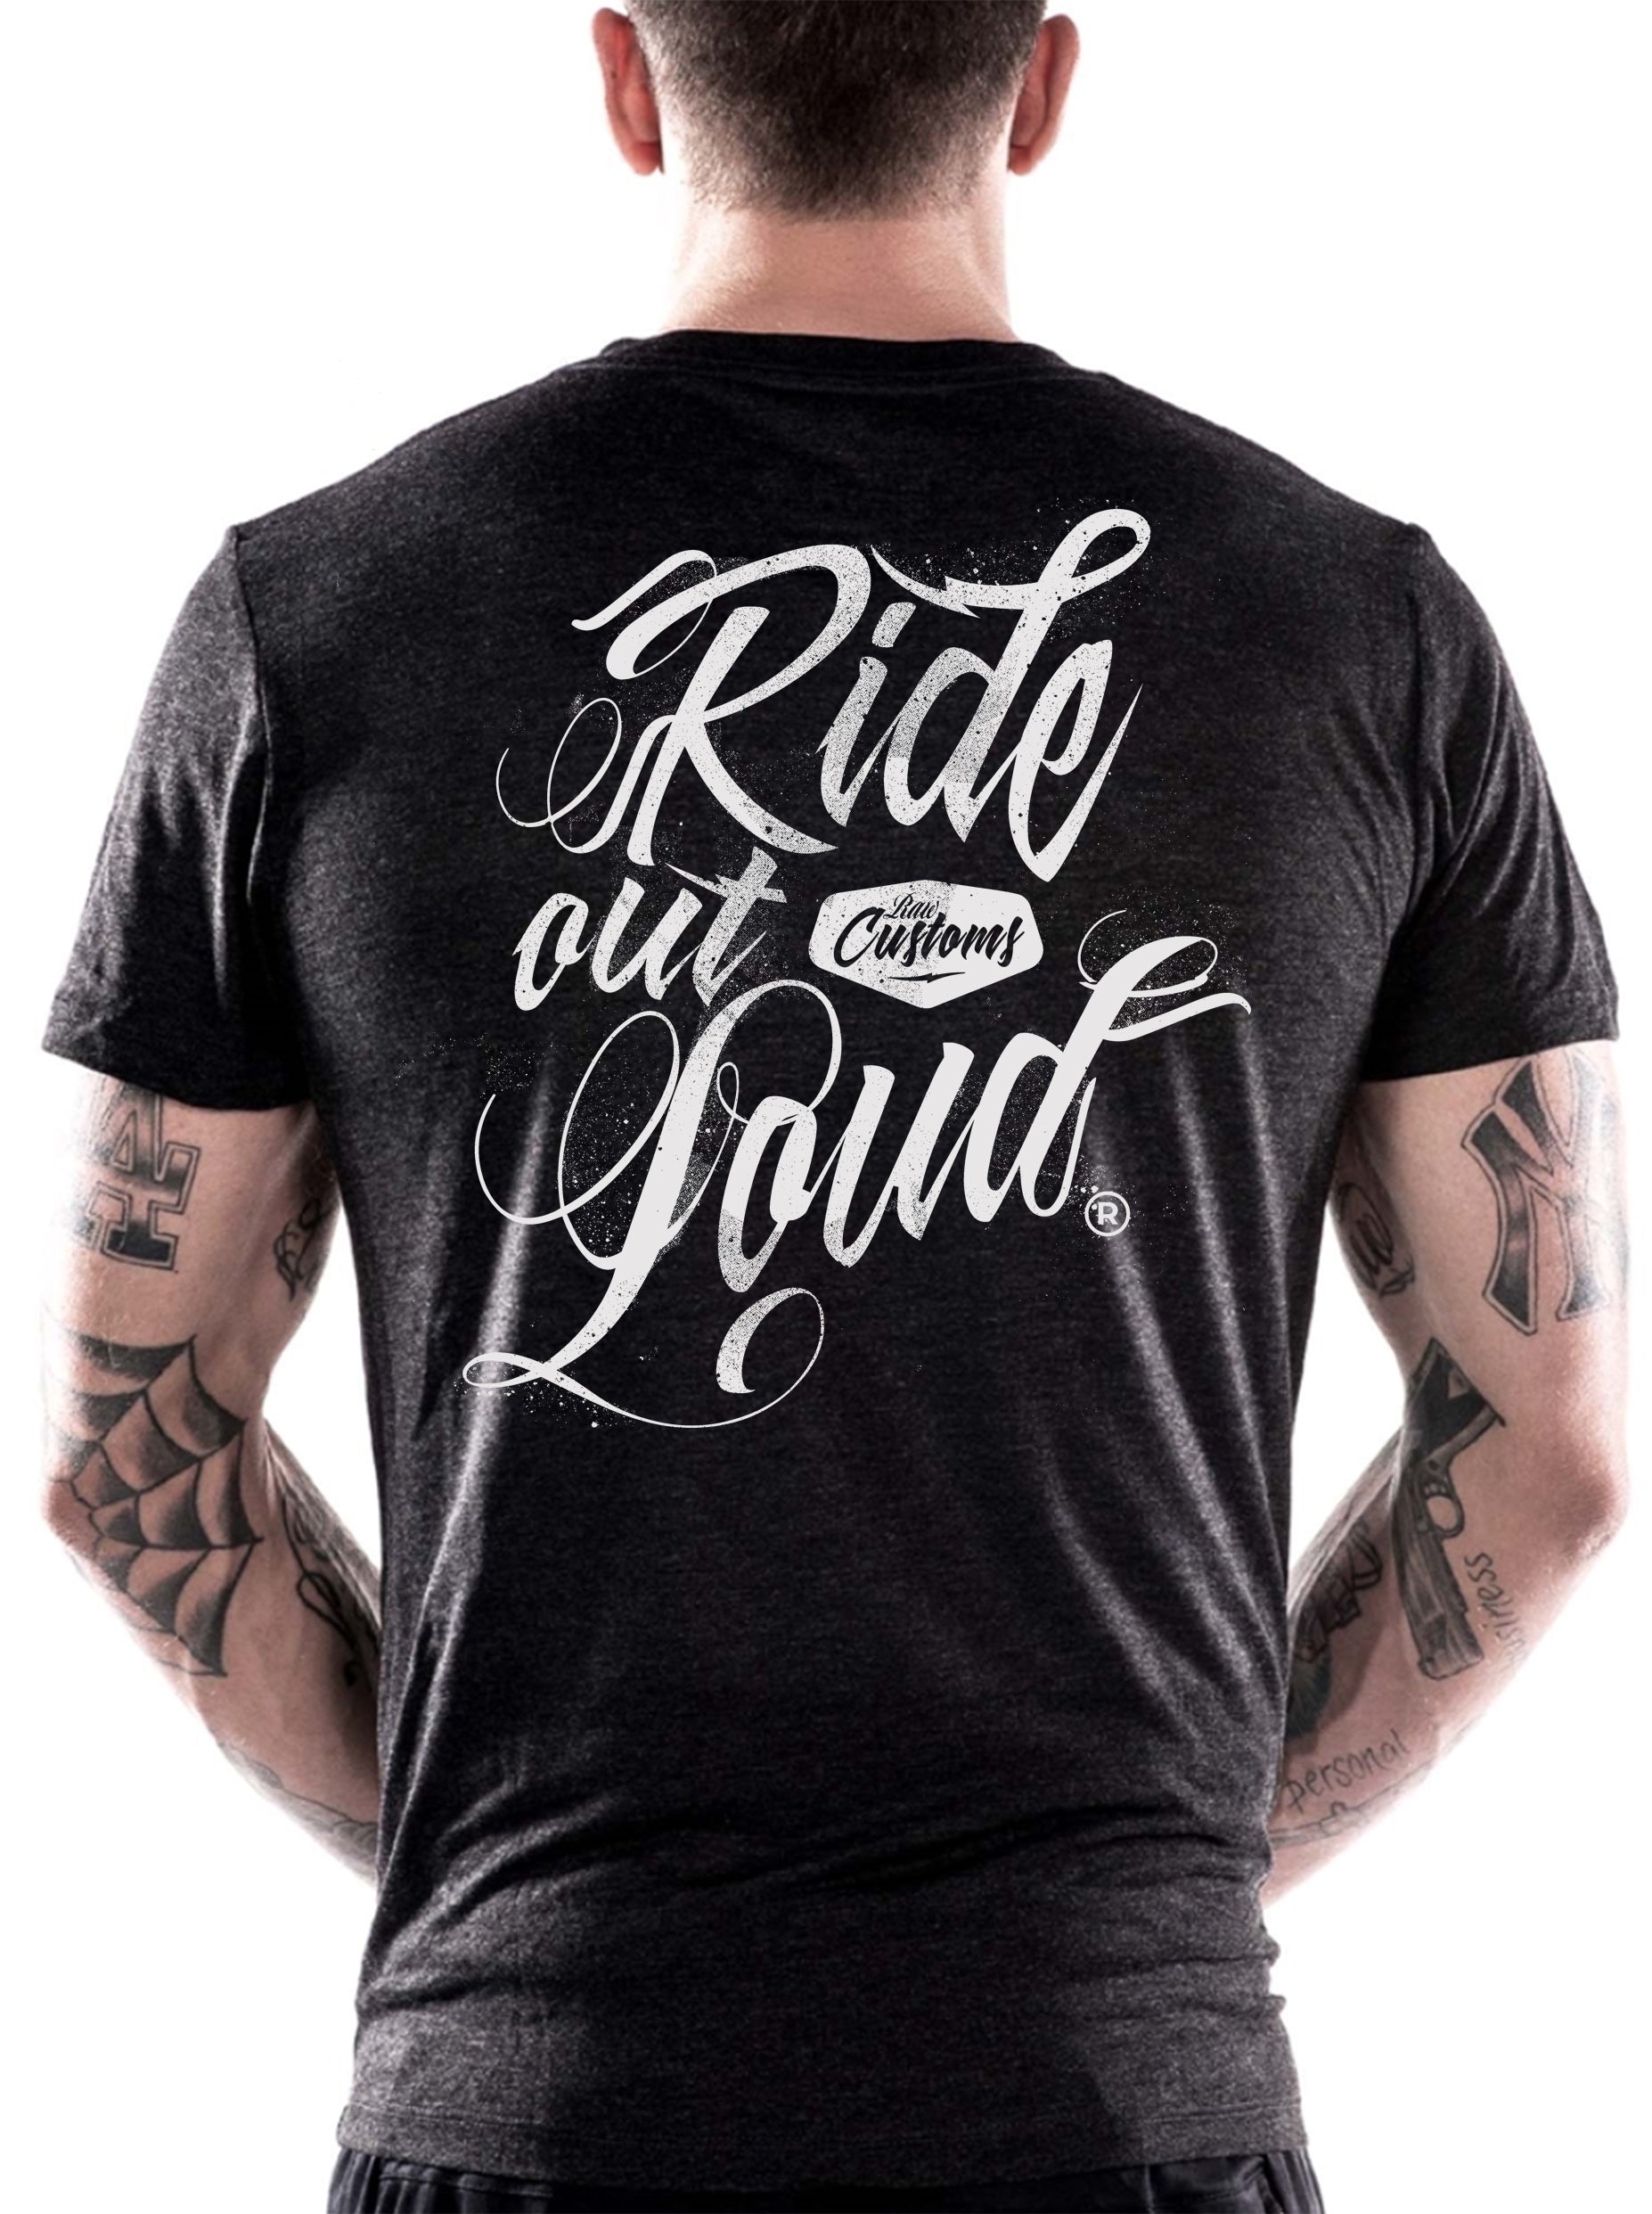 'Ride out Loud' Dutch on wheels x Raw Custom T-Shirt. Dutch on Wheels